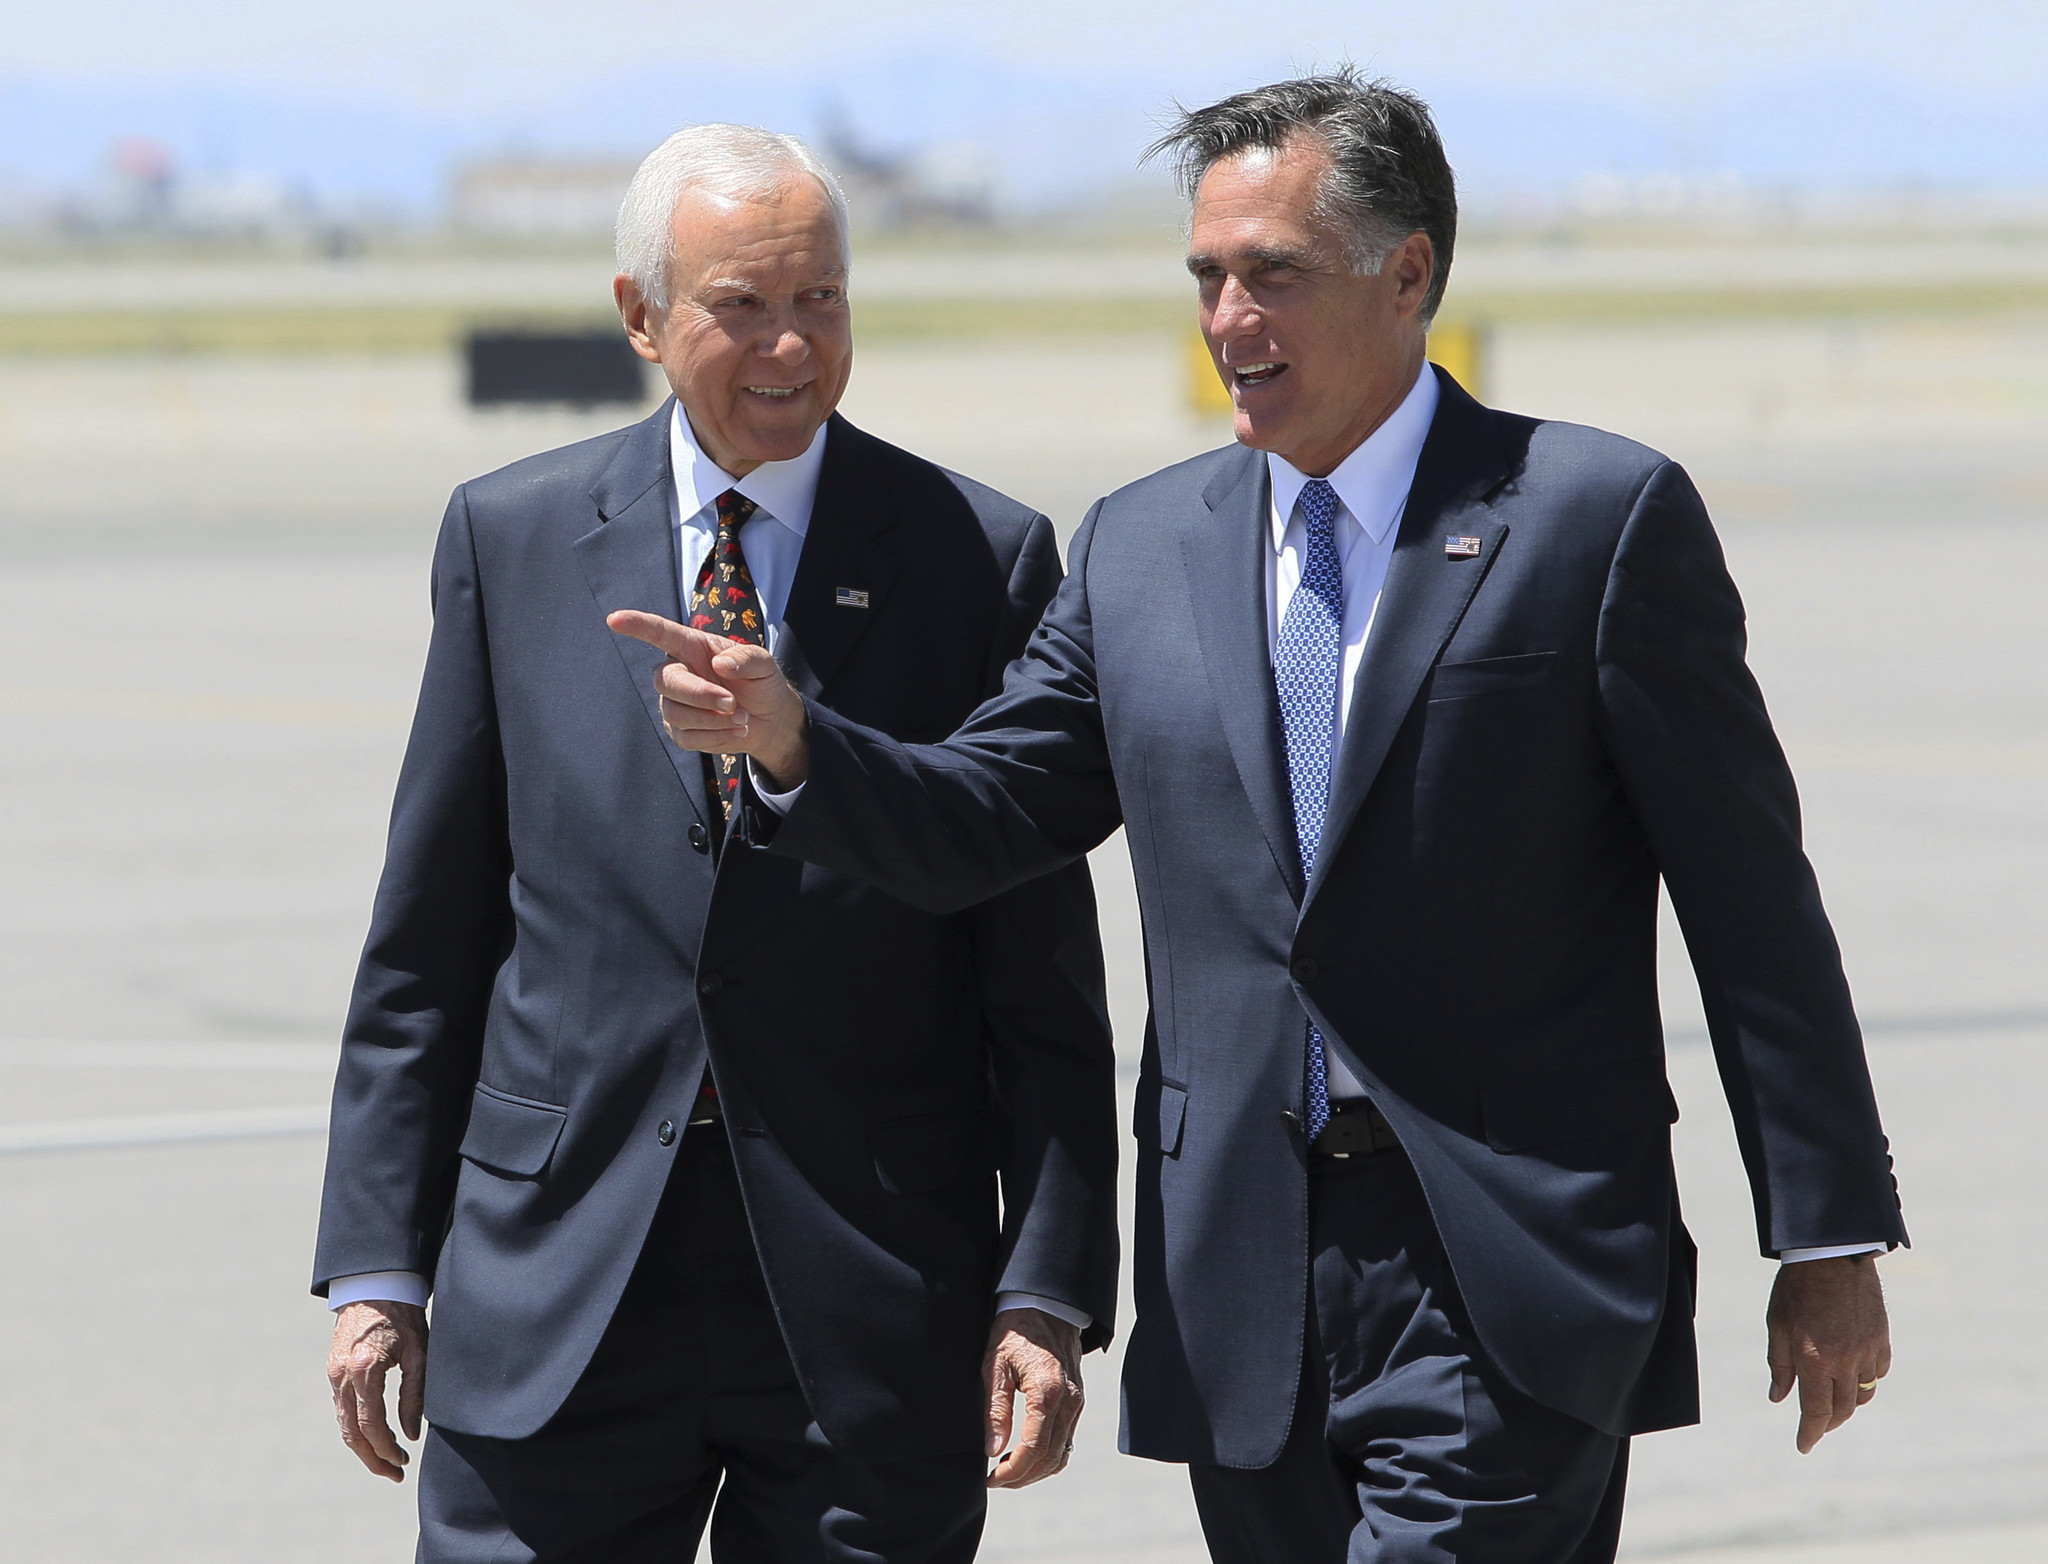 Romney makes it official: He's running for Utah Senate seat - Sun Sentinel